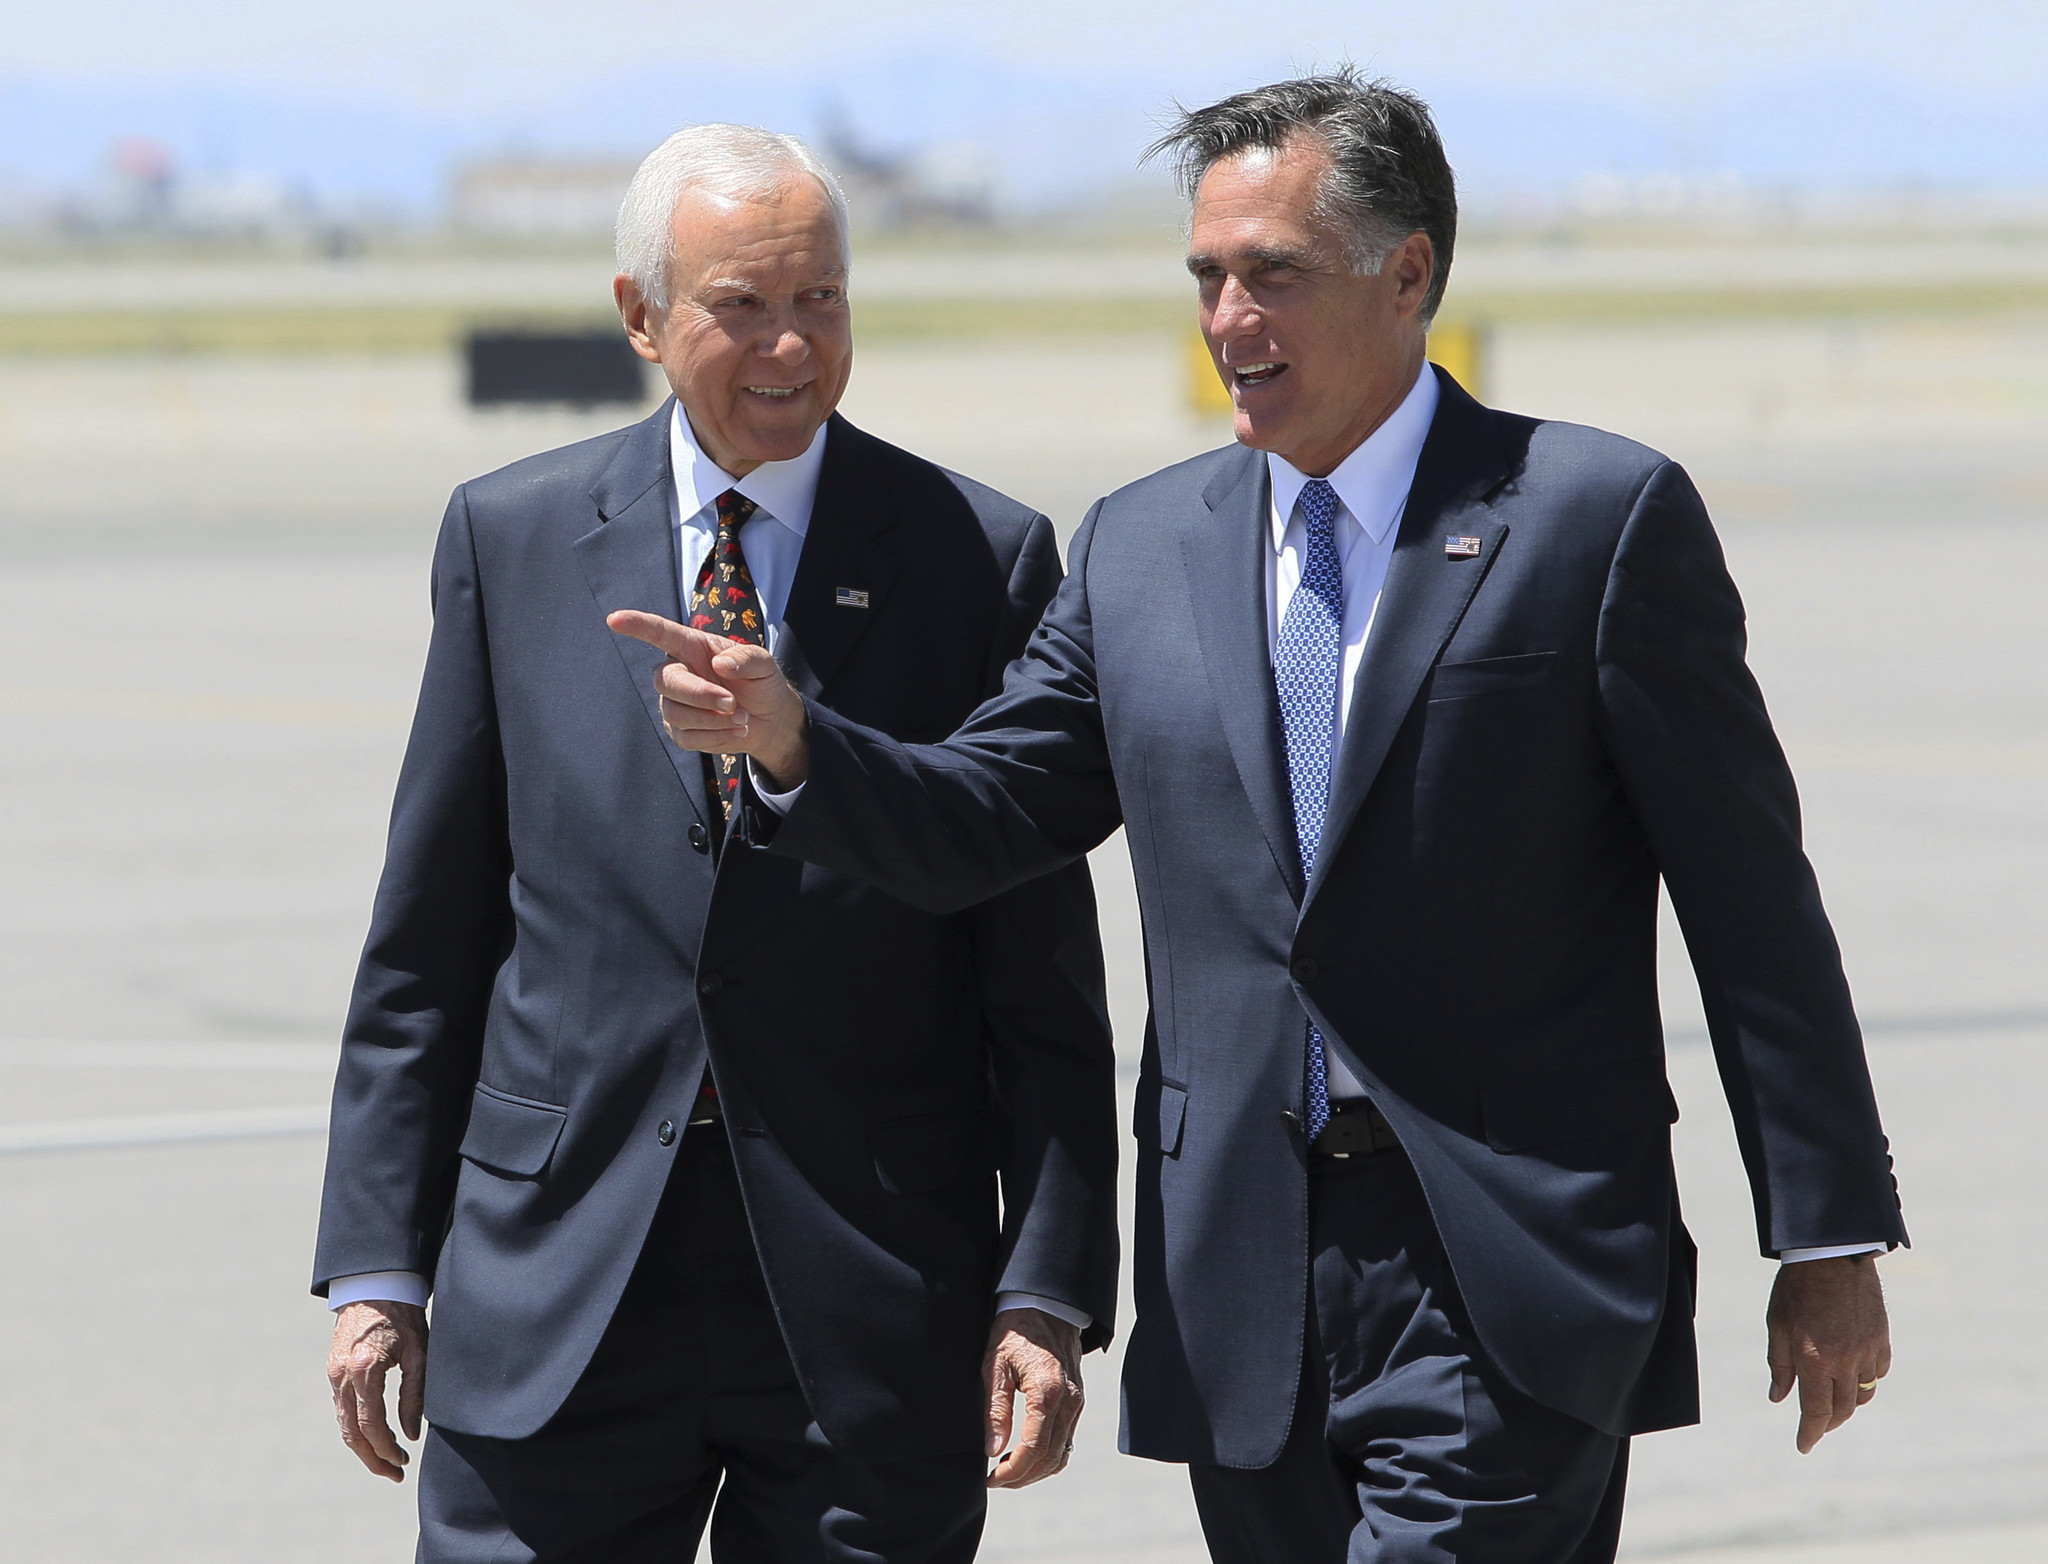 Romney makes it official: He's running for Utah Senate seat - Sun Sentinel